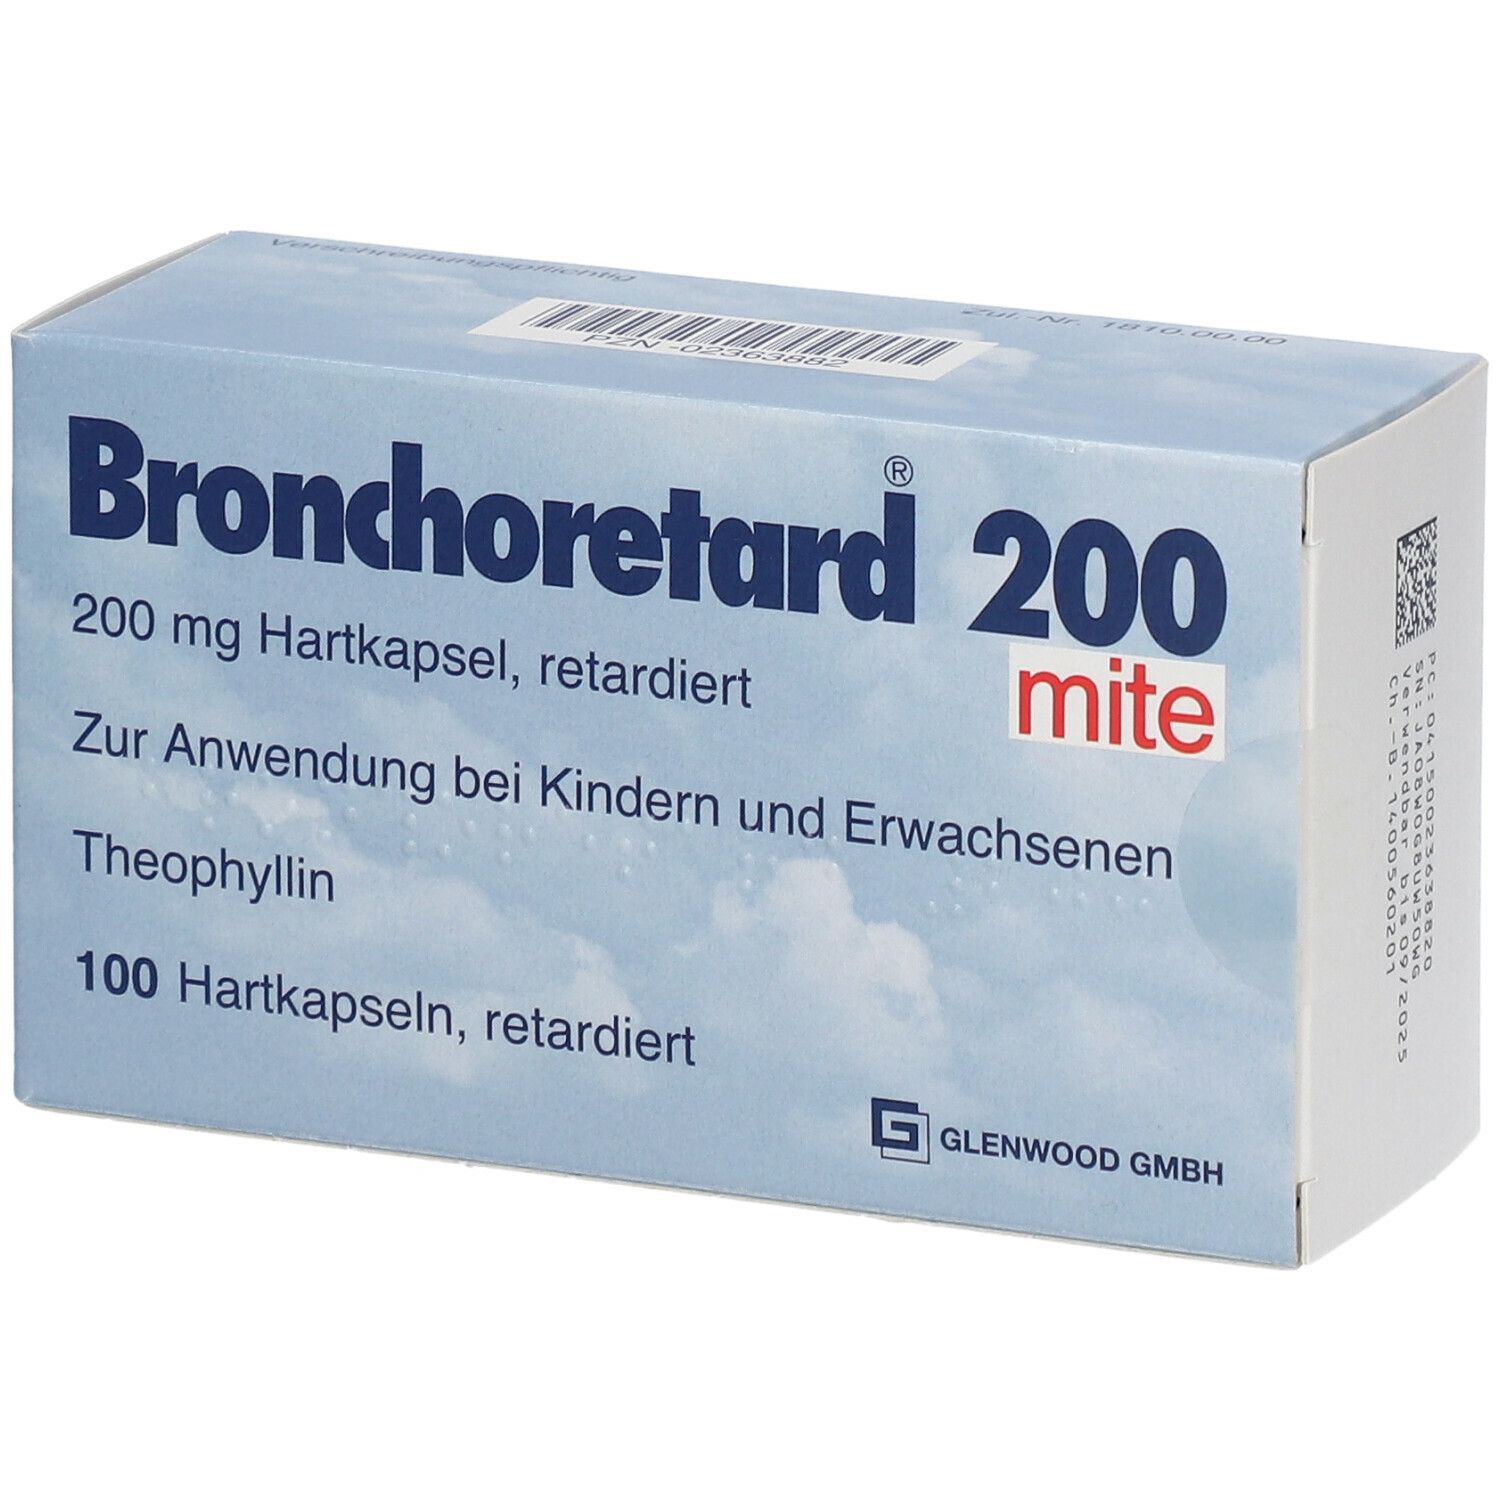 Bronchoretard® 200 mite